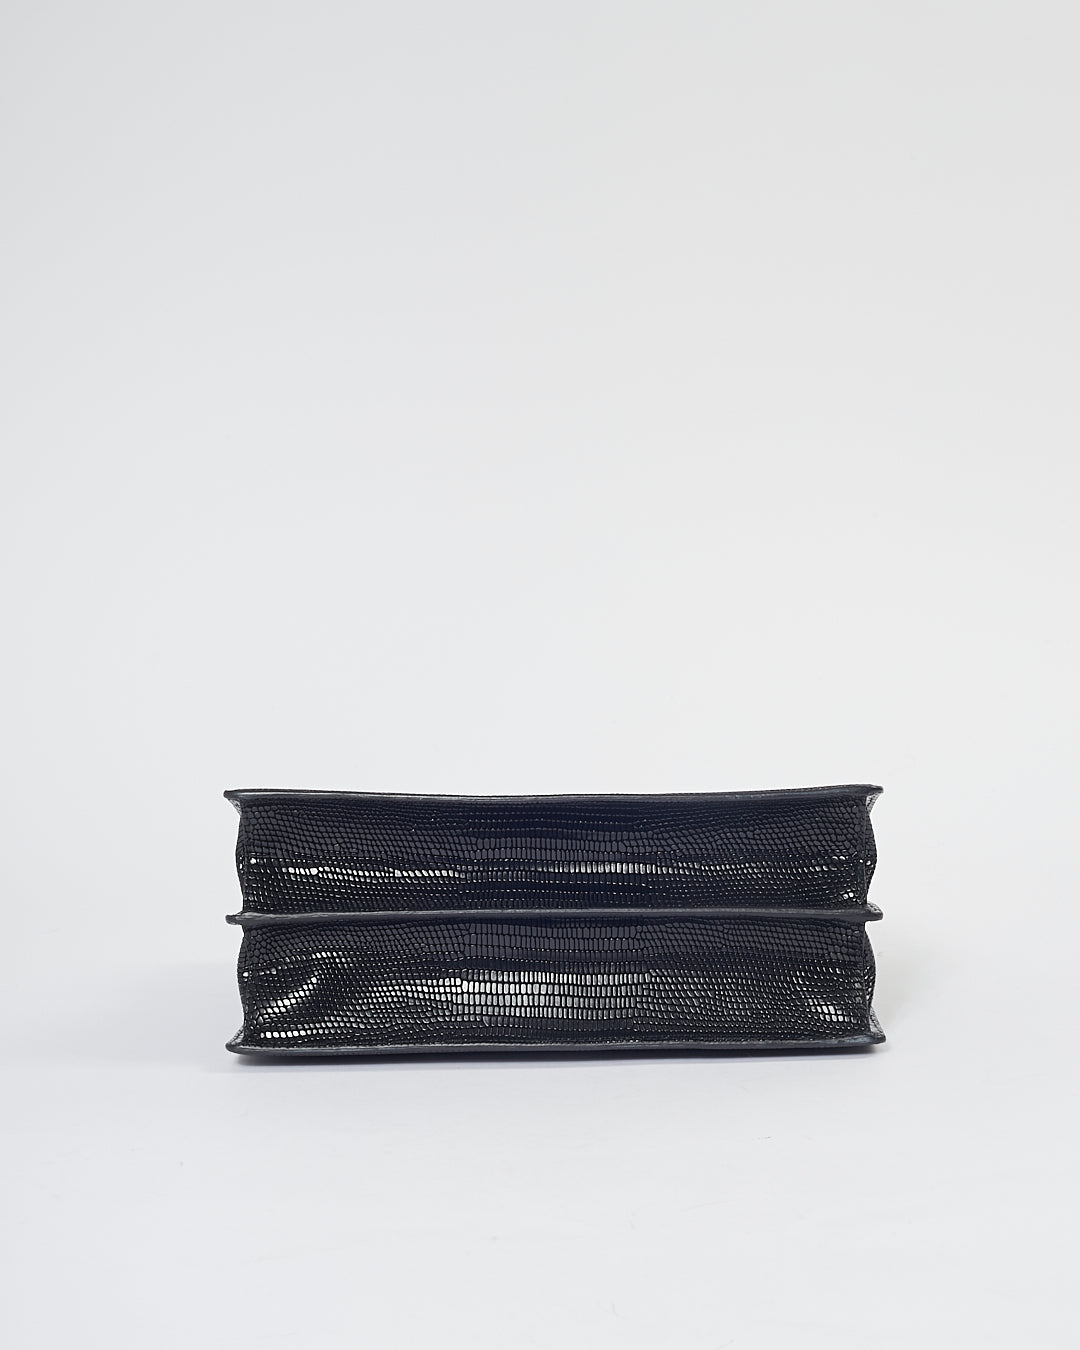 Miu Miu Black Embossed Lizard Leather Top Handle Padlock Bag